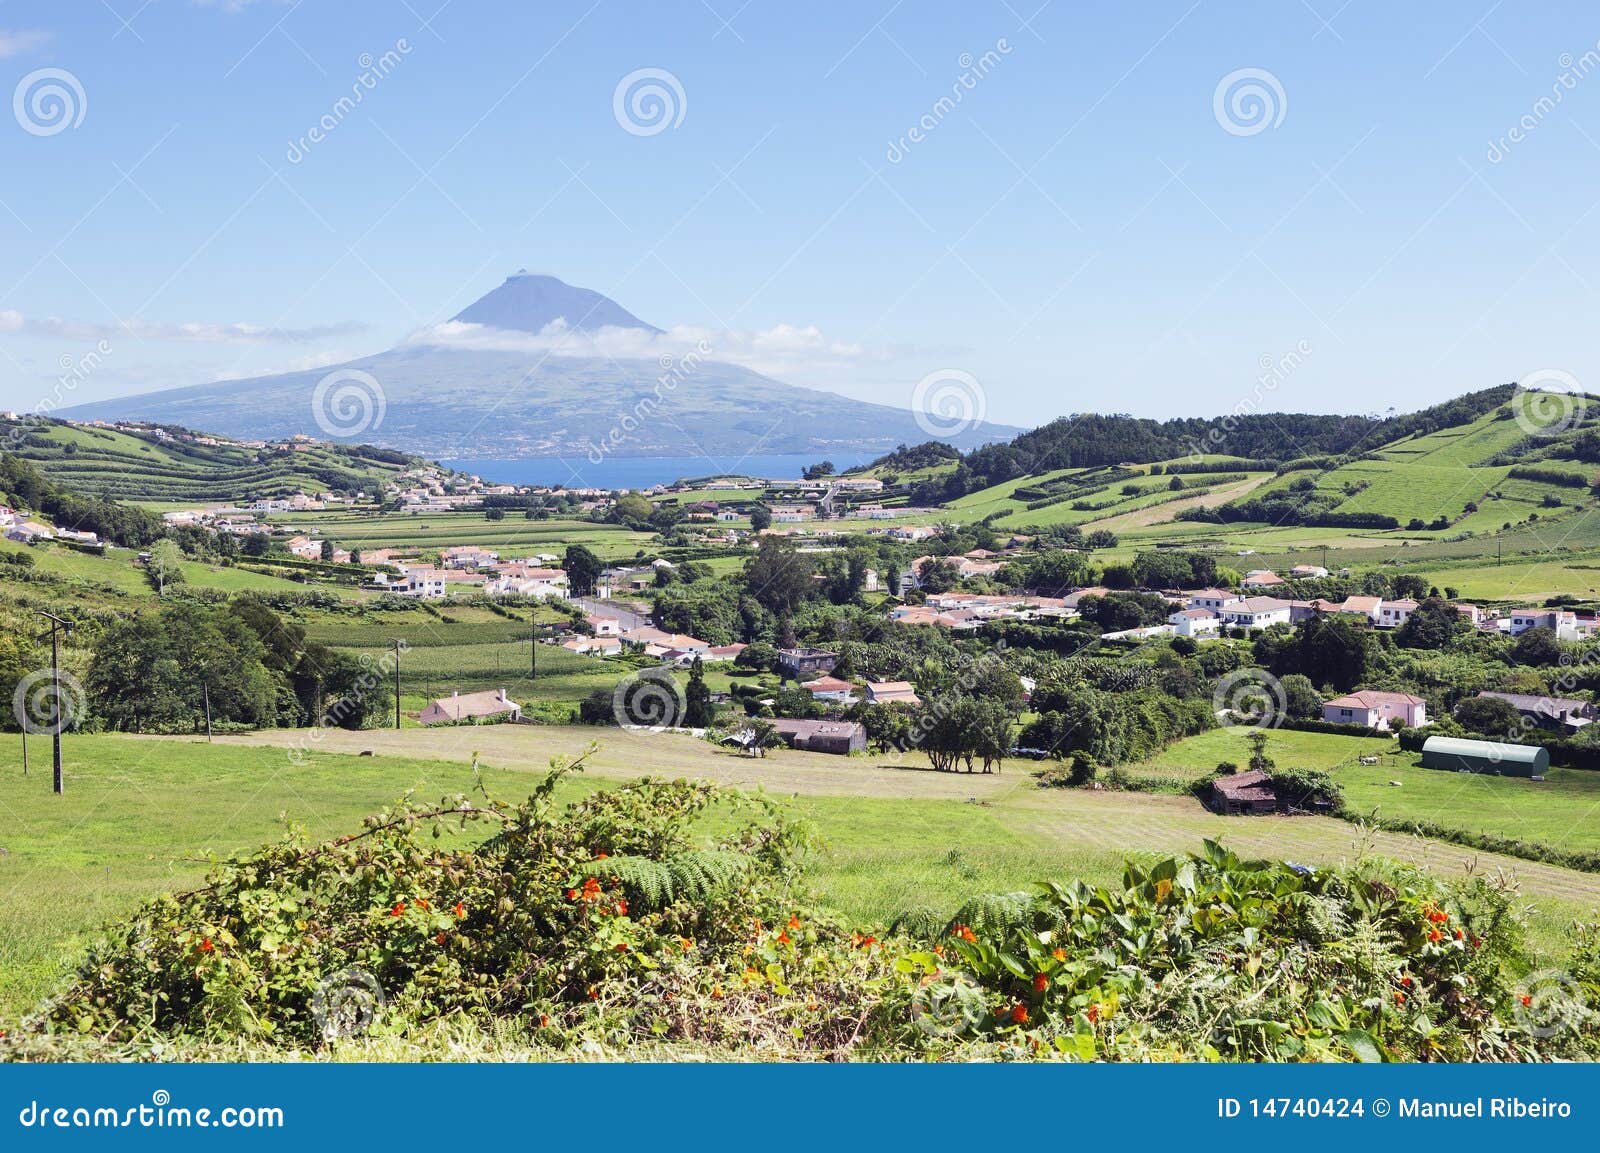 landscape of faial, azores